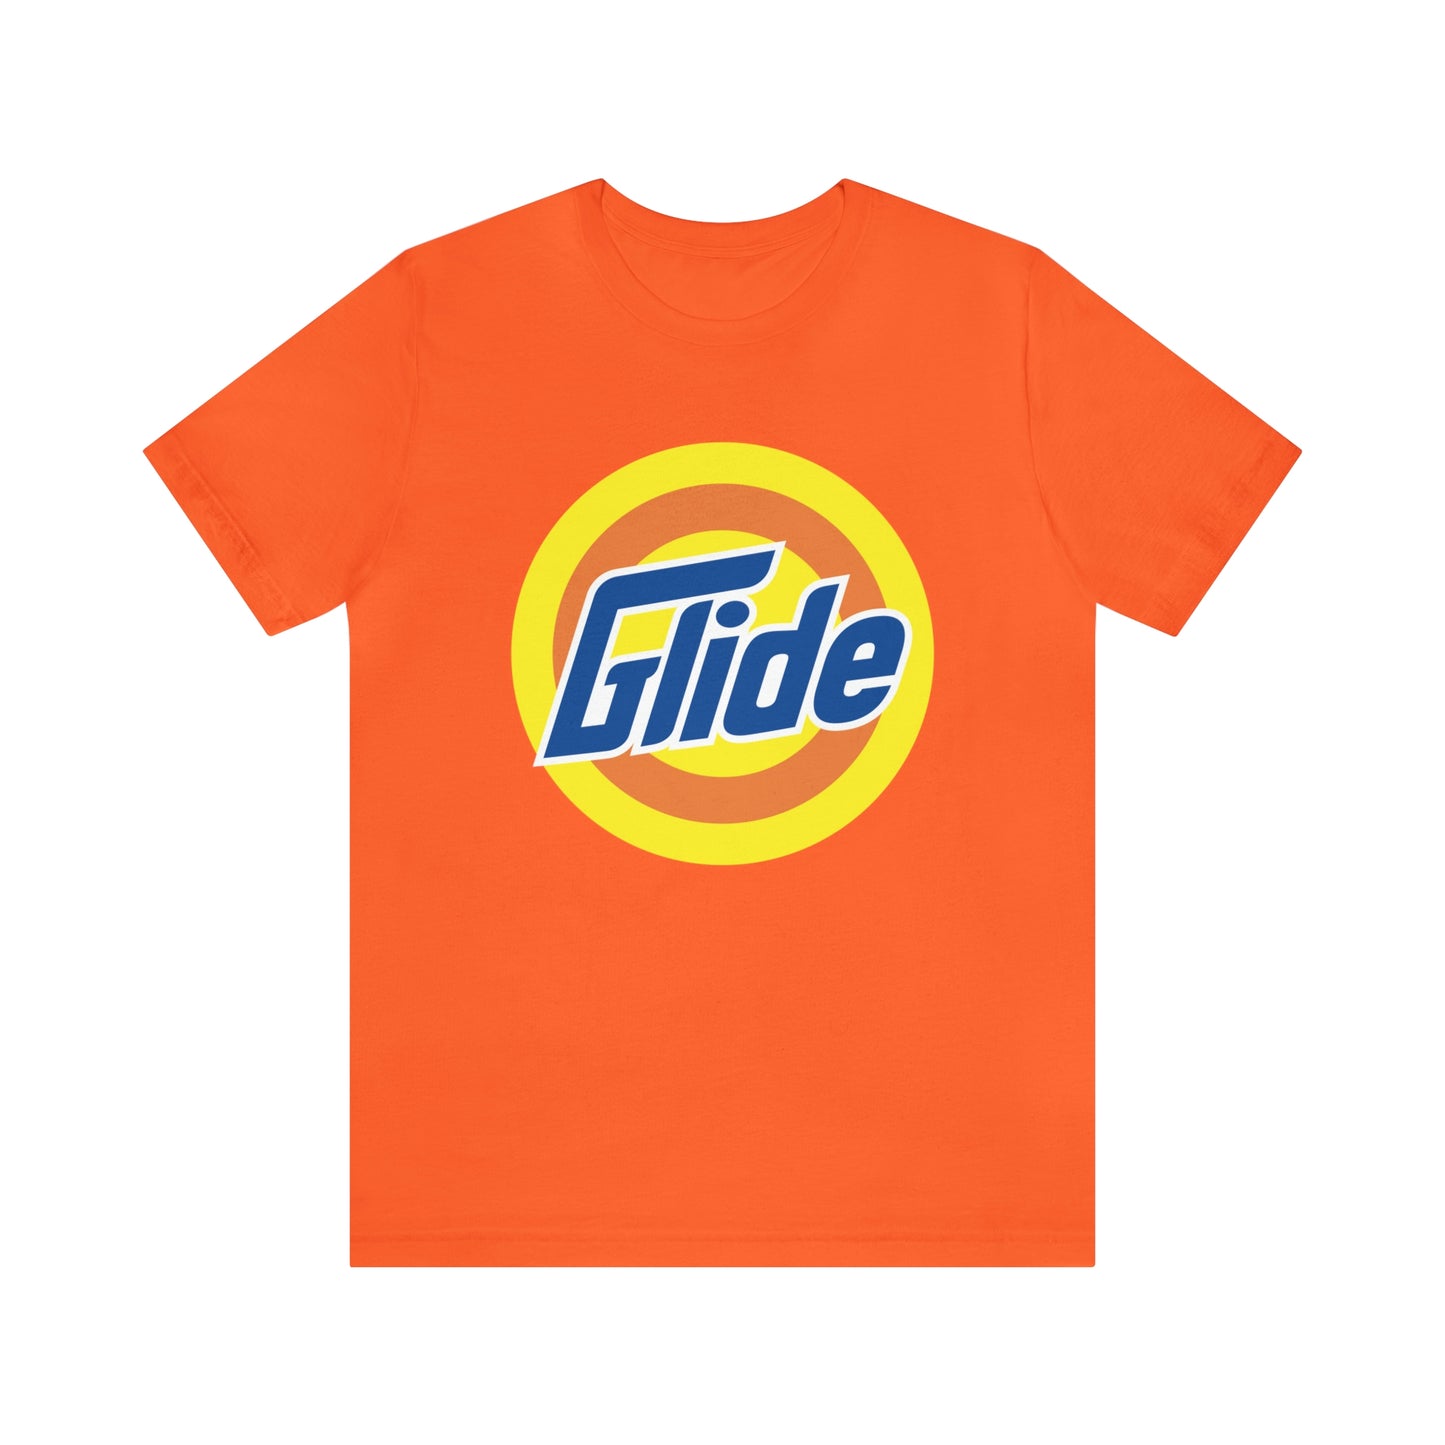 Glide T-Shirt